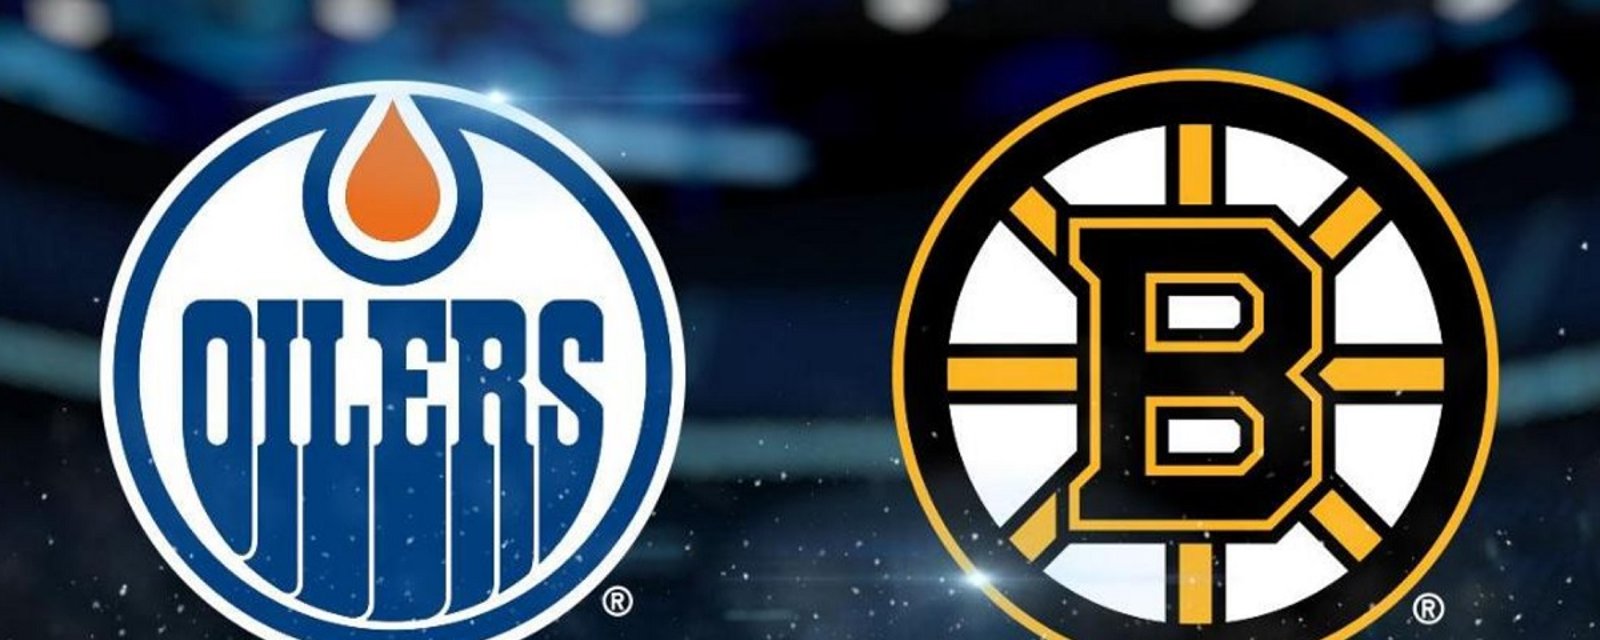 Rumor: Oilers and Bruins in talks regarding a potential trade.